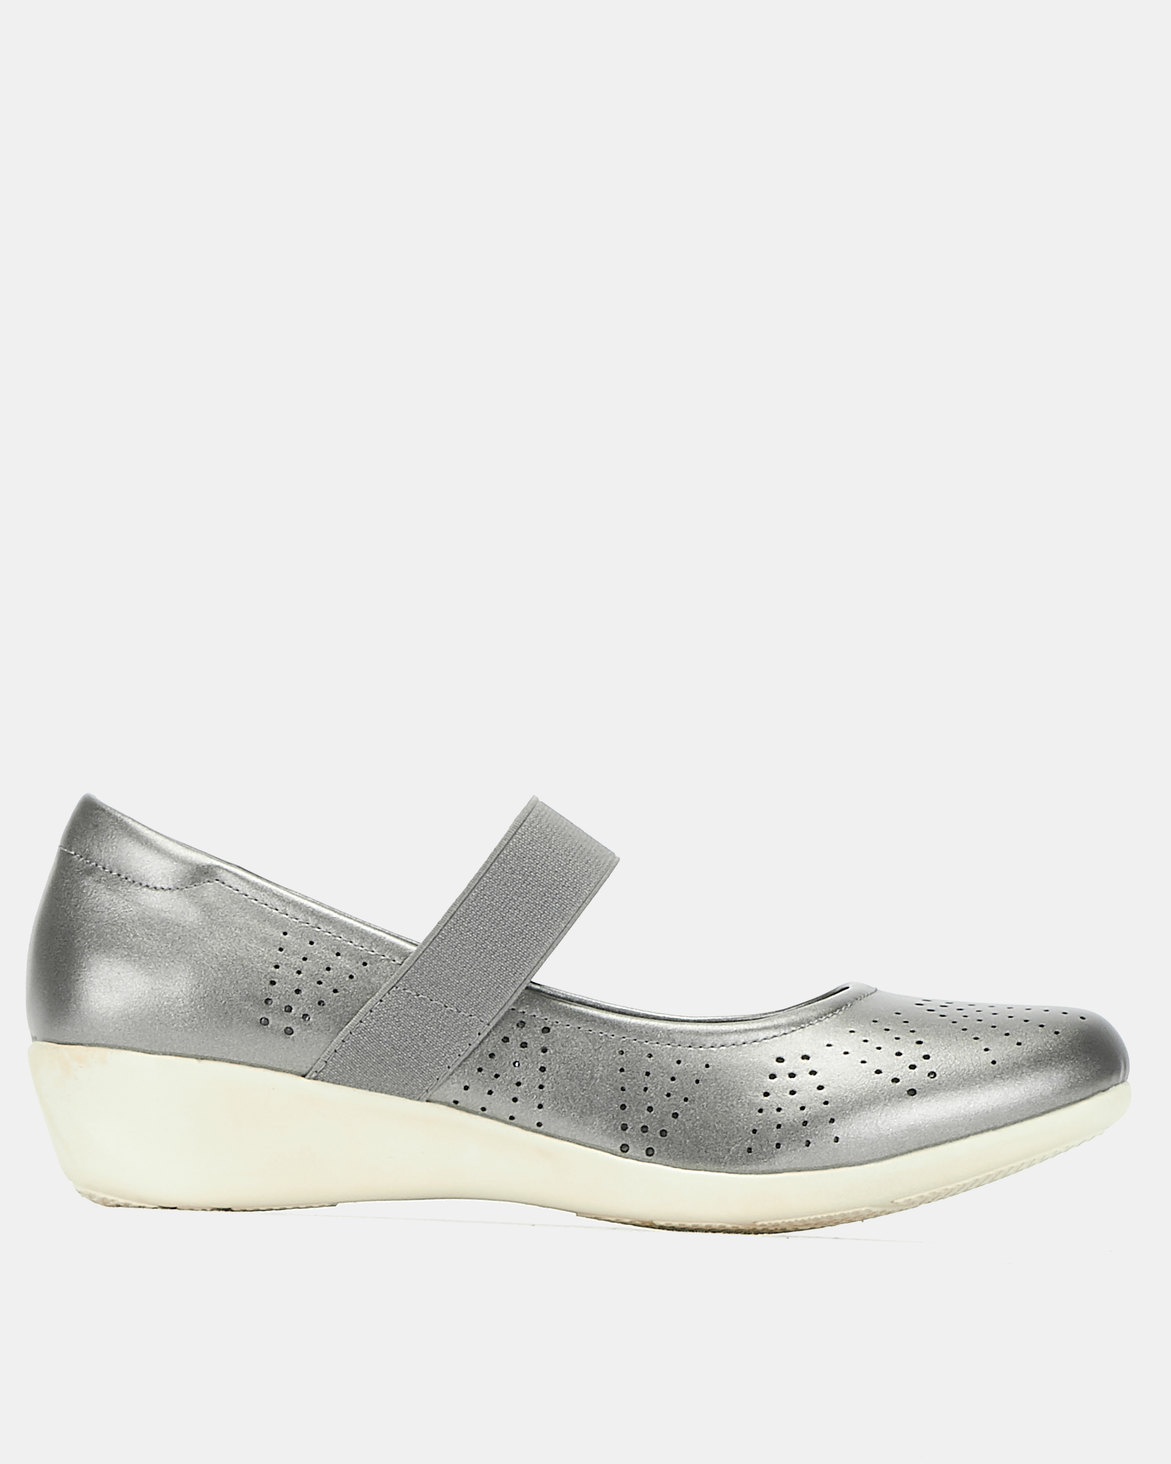 Bata Comfit Casual Strap Shoes Silver | Zando